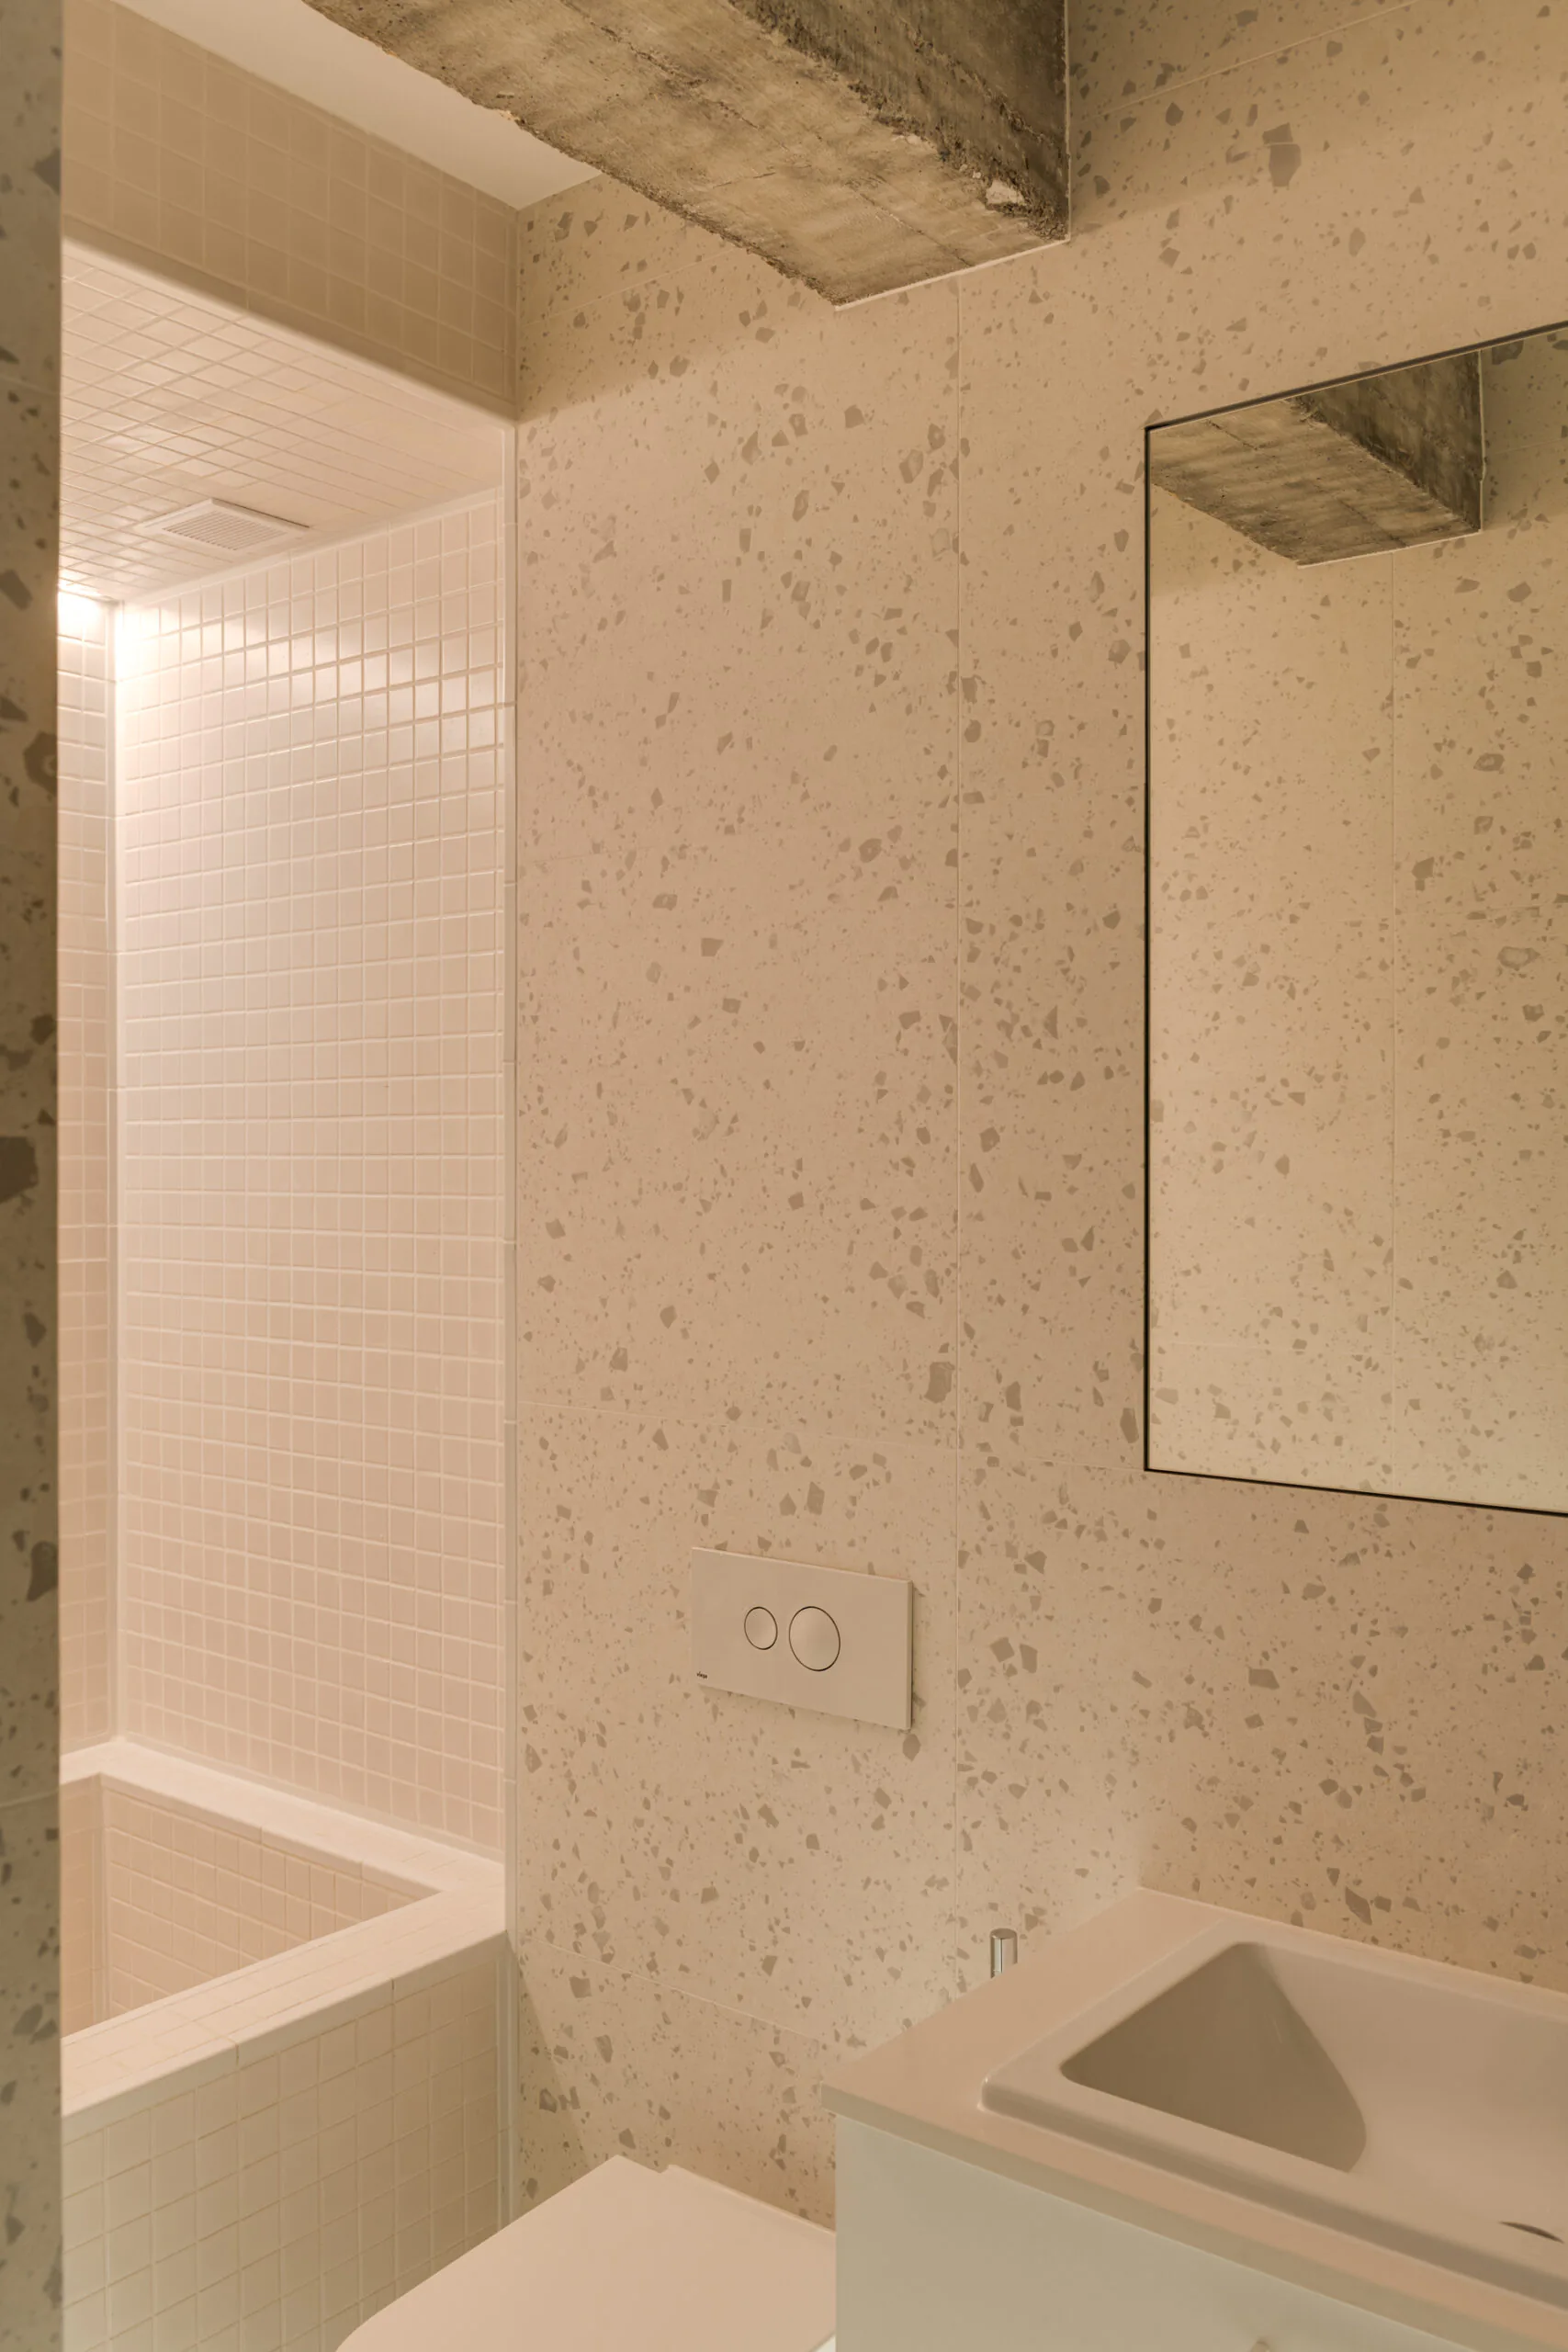 salle de bain beige décoration design